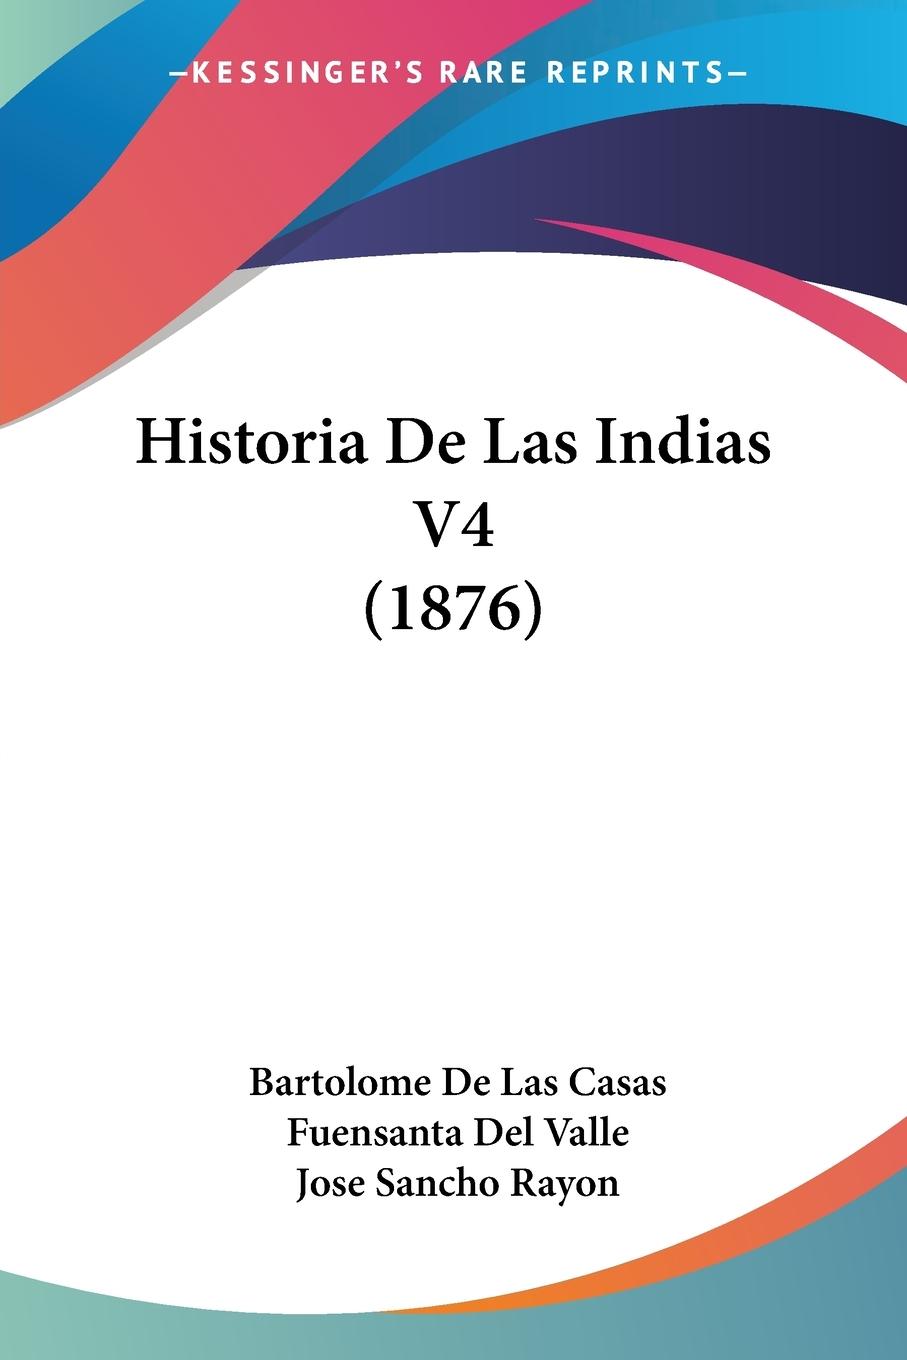 Historia De Las Indias V4 (1876) - Casas, Bartolome De Las Valle, Fuensanta Del Rayon, Jose Sancho